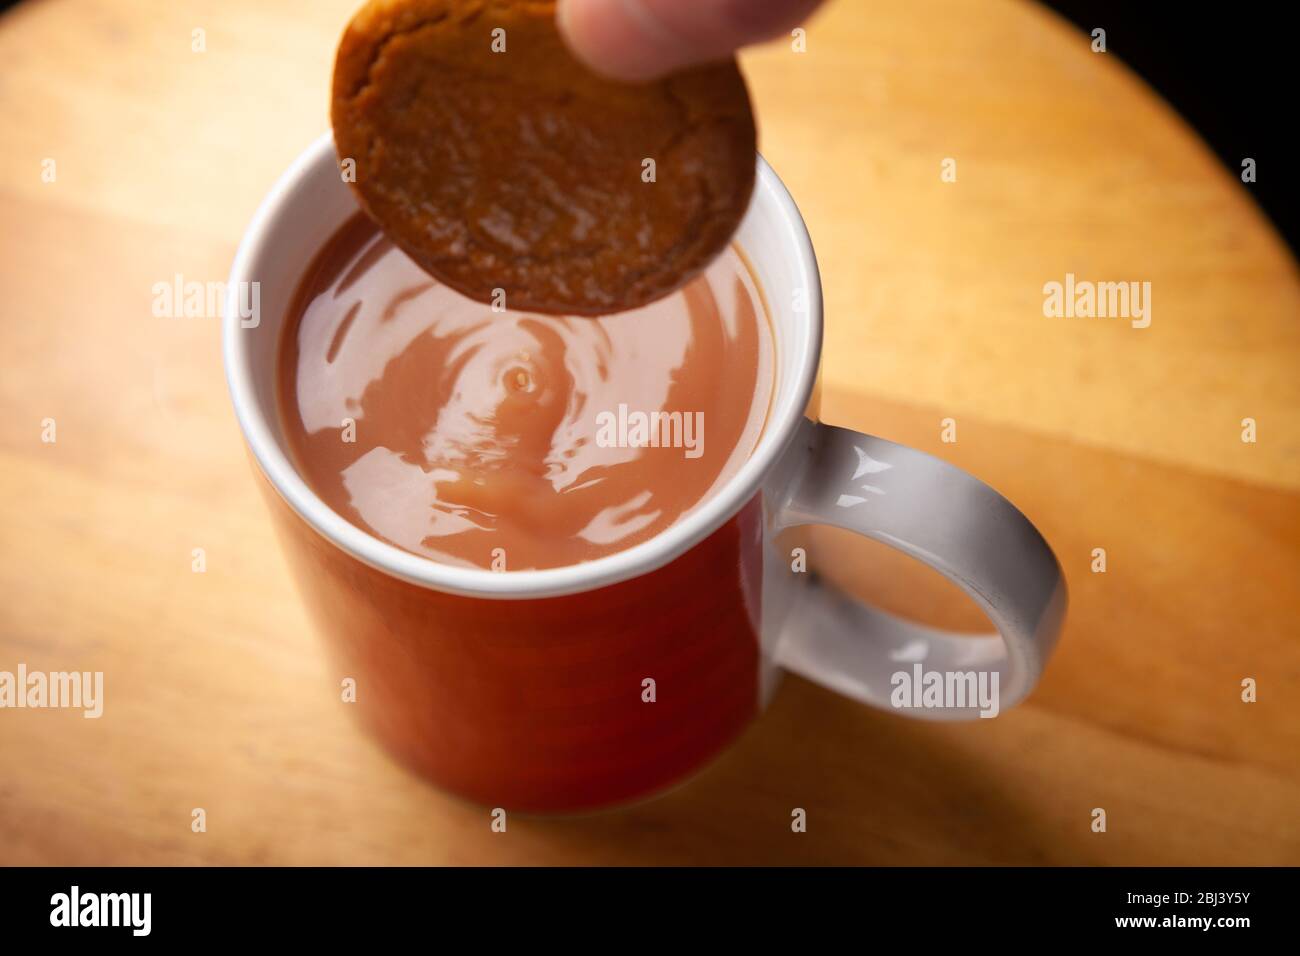 Douchez un biscuit au gingembre dans un mug à thé Banque D'Images